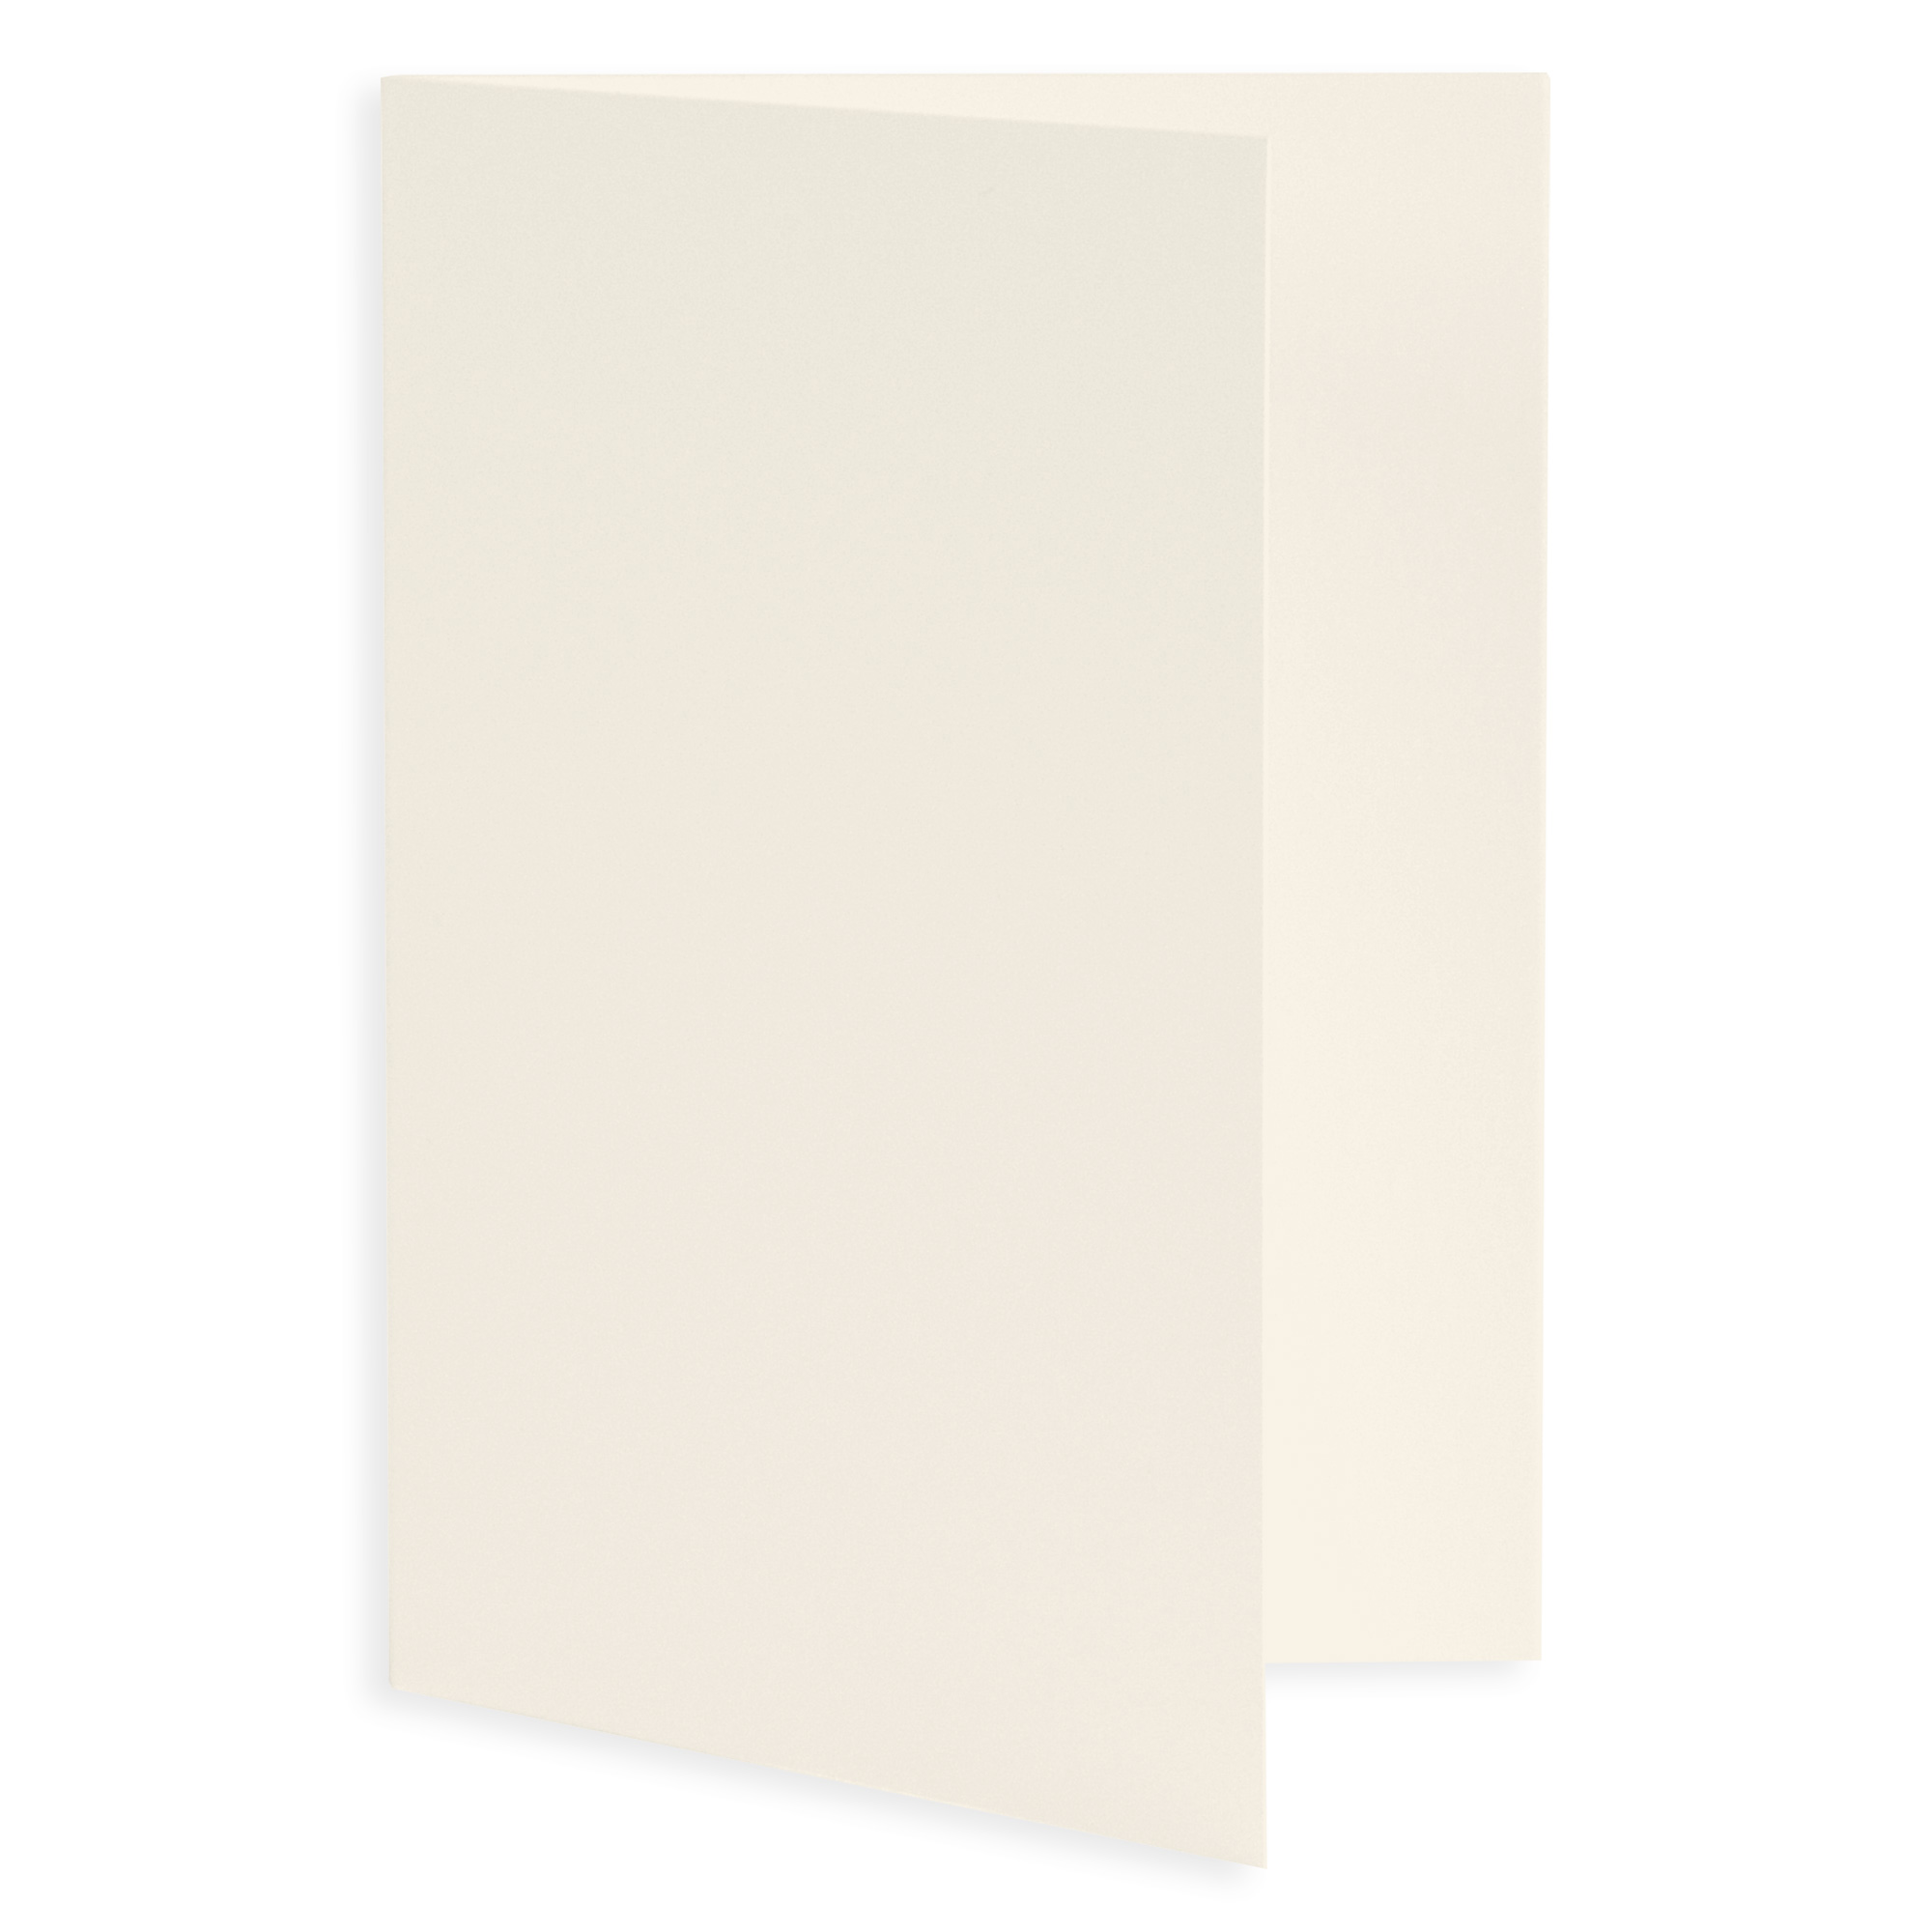 Ecru Folded Card - A1 LCI Smooth 3 1/2 x 4 7/8 65C